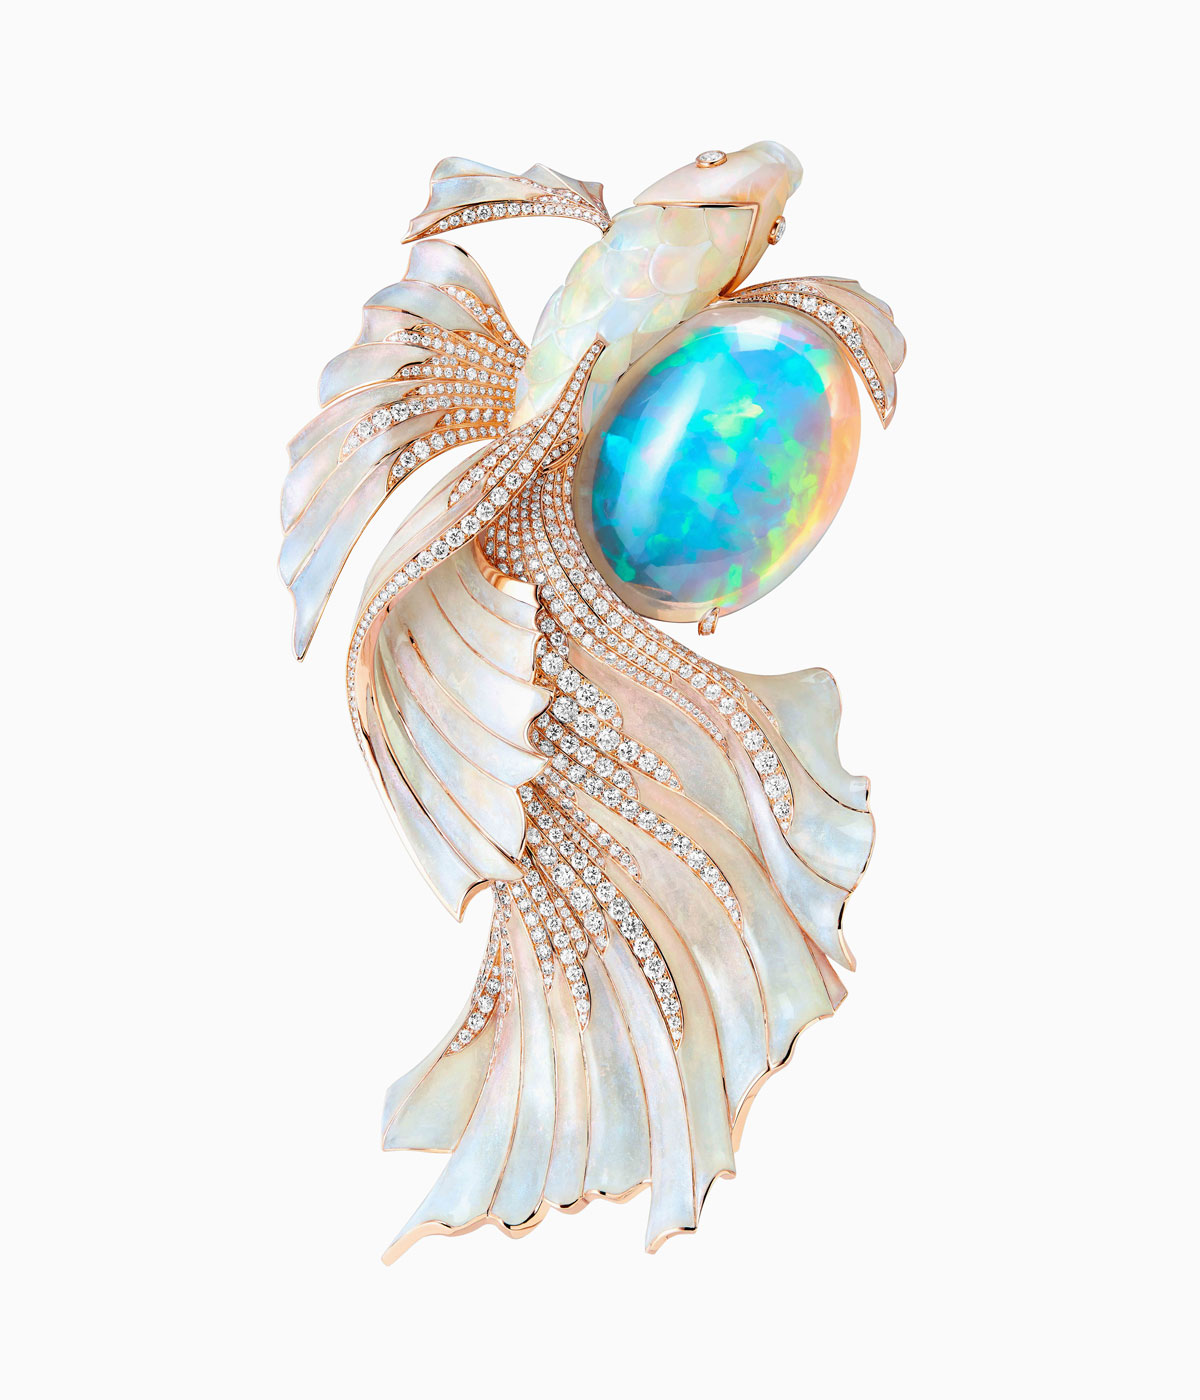 White fish jewel surrounding a large opal